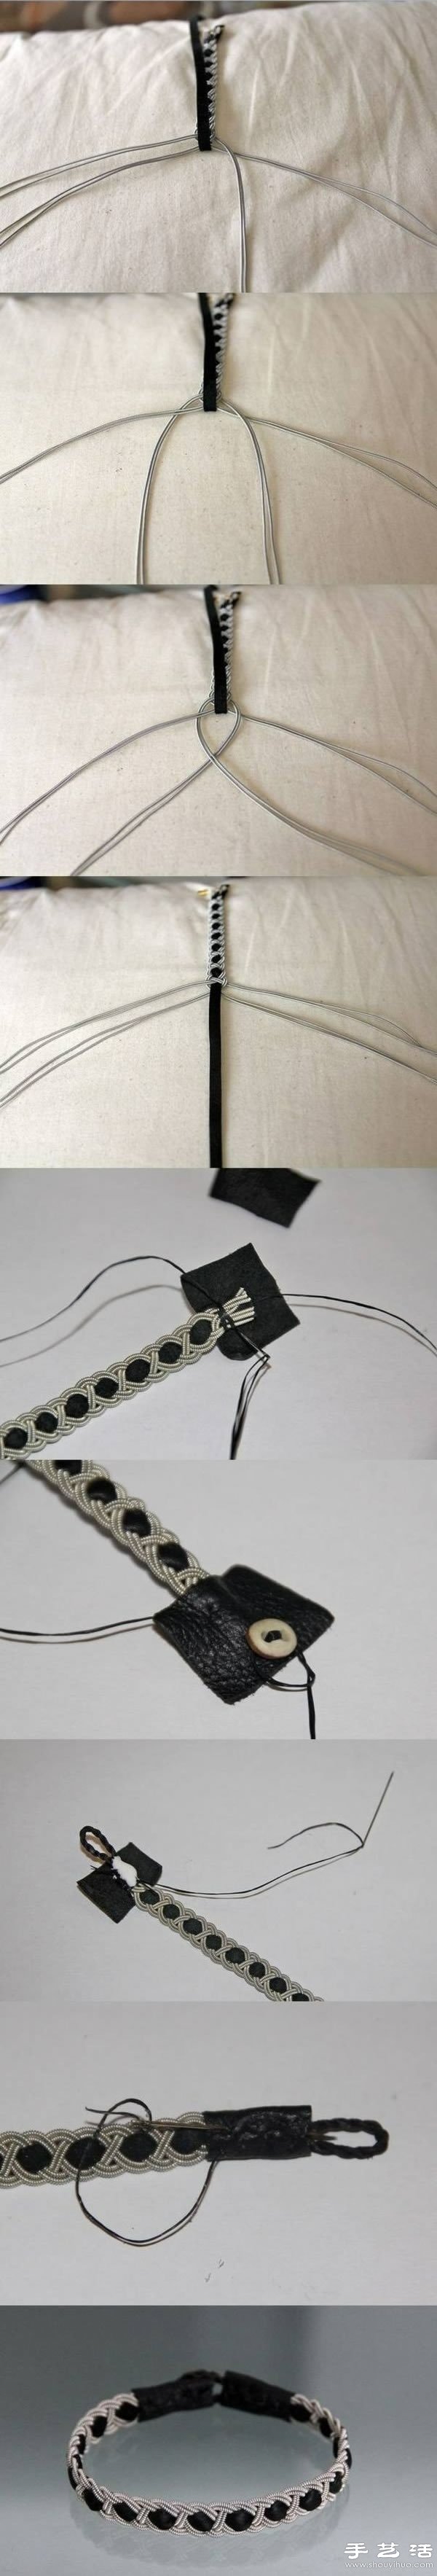 皮革+金属链/串珠链 手工制作古典编织手链